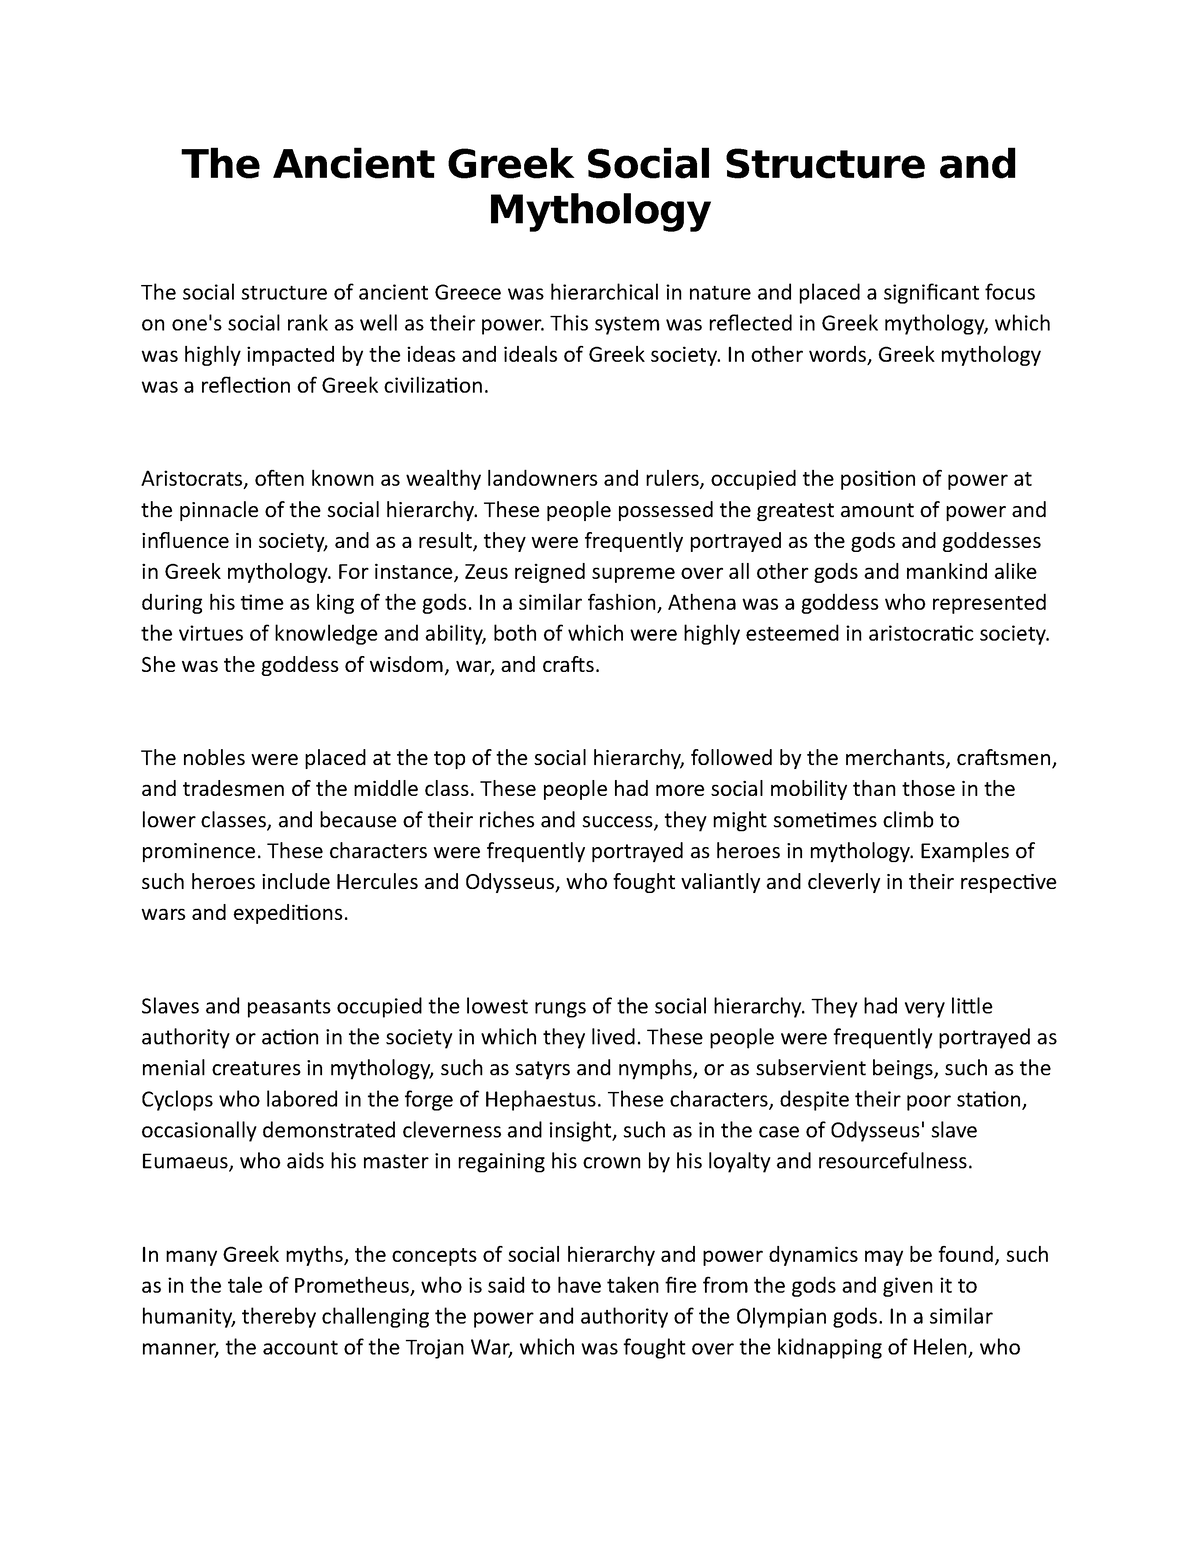 significance of greek mythology essay